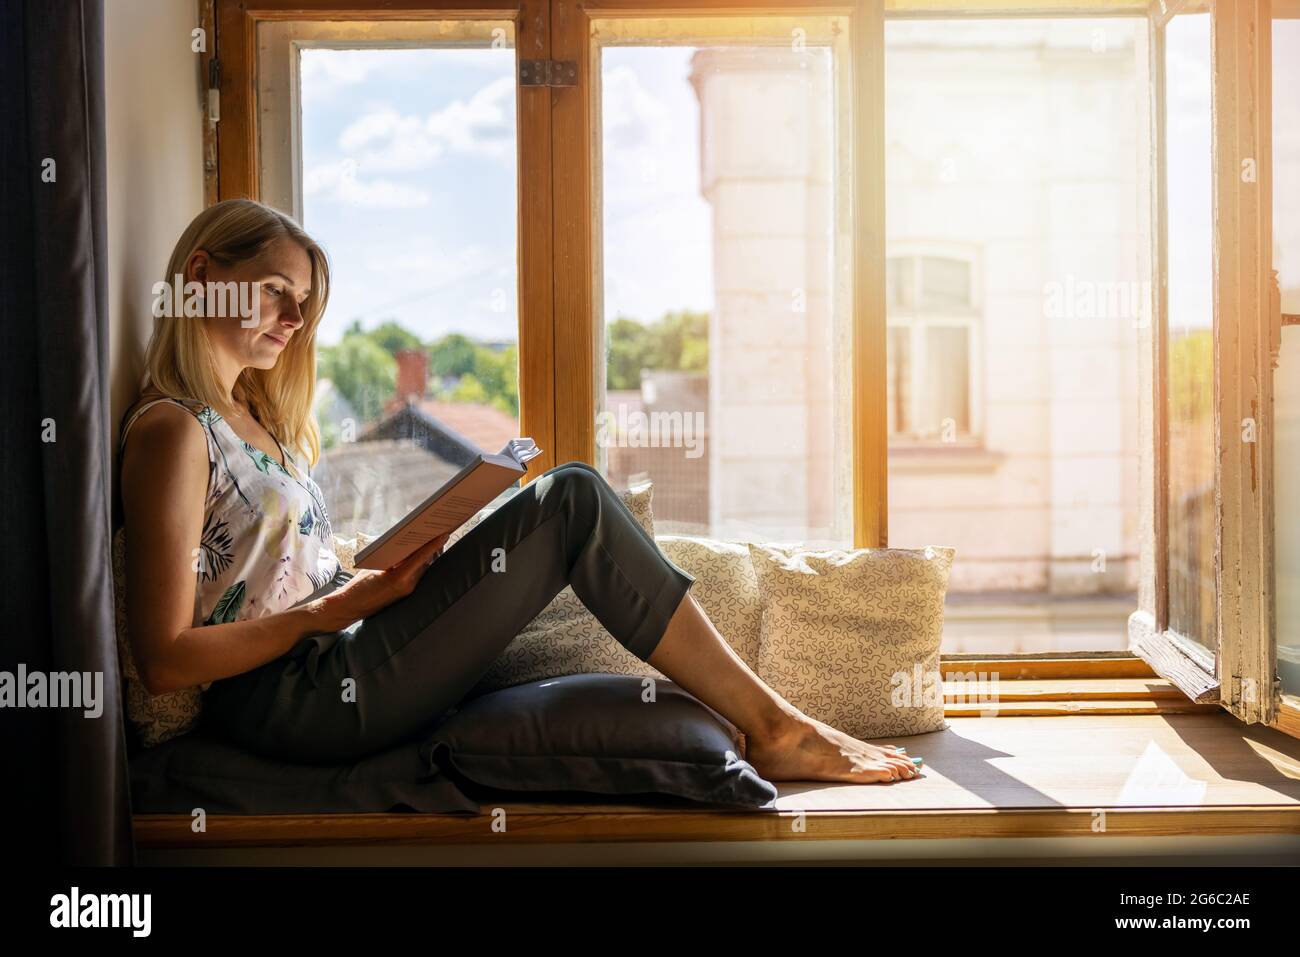 Junge Frau, die zu Hause auf einer gemütlichen, sonnigen Fensterbank sitzt und ein Buch liest Stockfoto